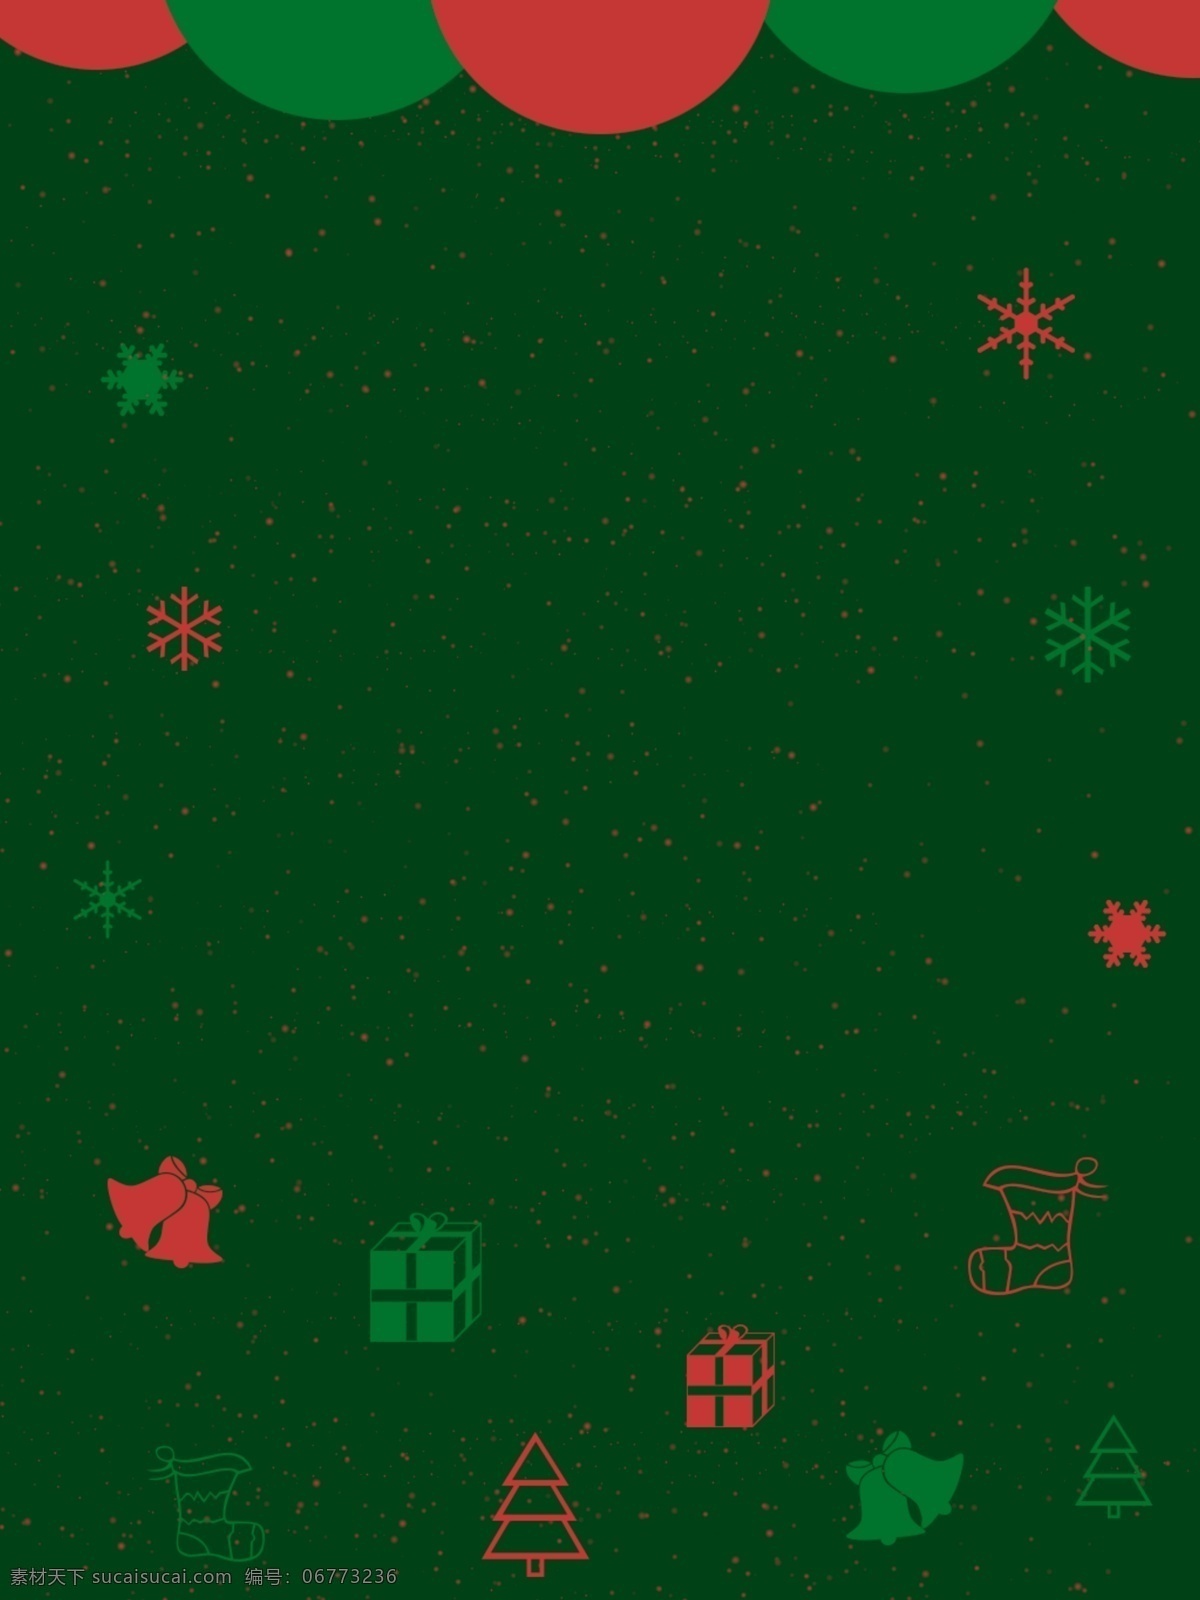 圣诞节 西方 节日 红 绿 搭配 绿色 简约 扁平 背景 绿色背景 礼物 雪花 西方节日 红绿搭配 铃铛 袜子 圣诞树